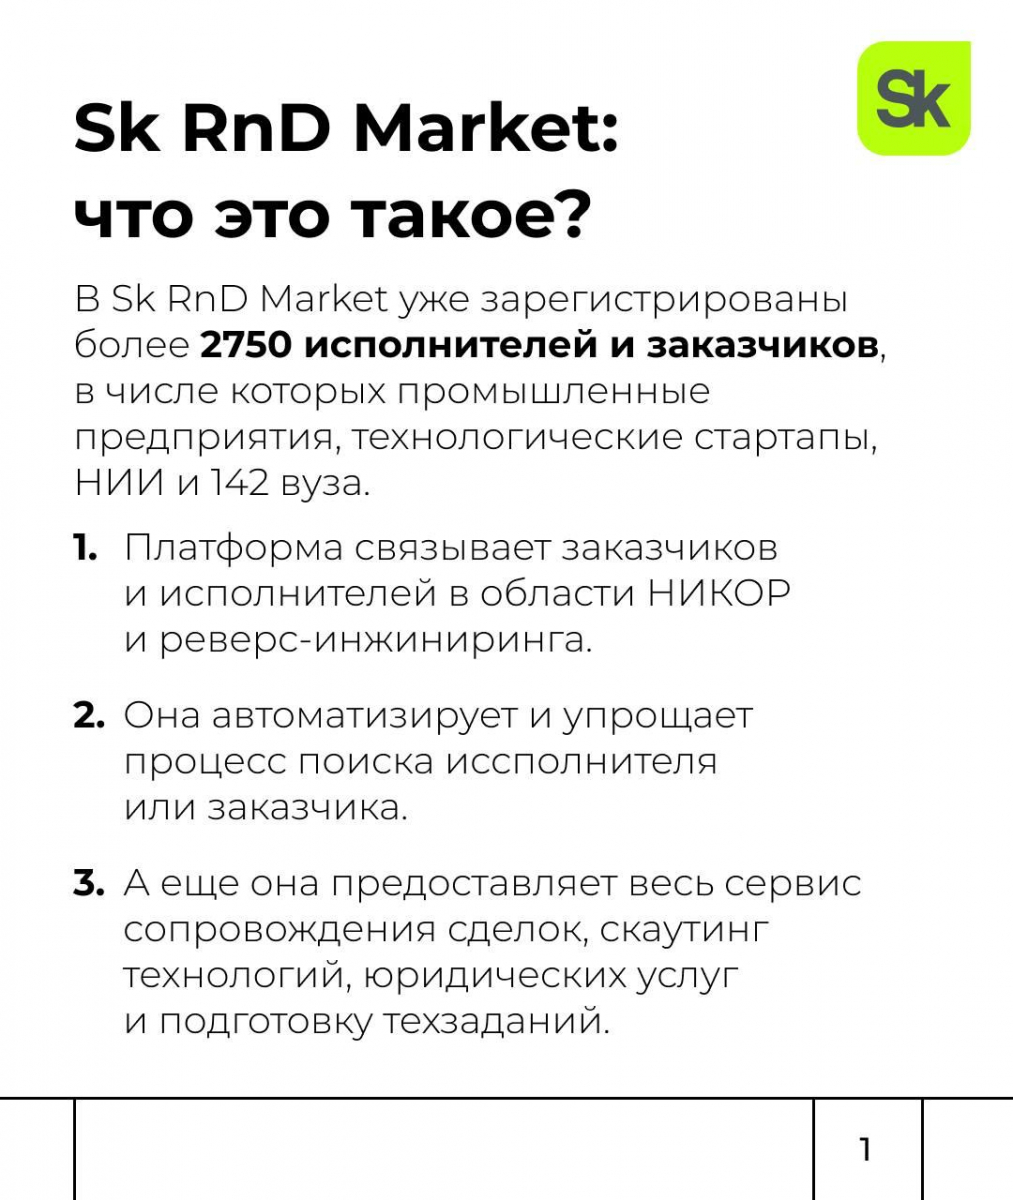 Rnd market